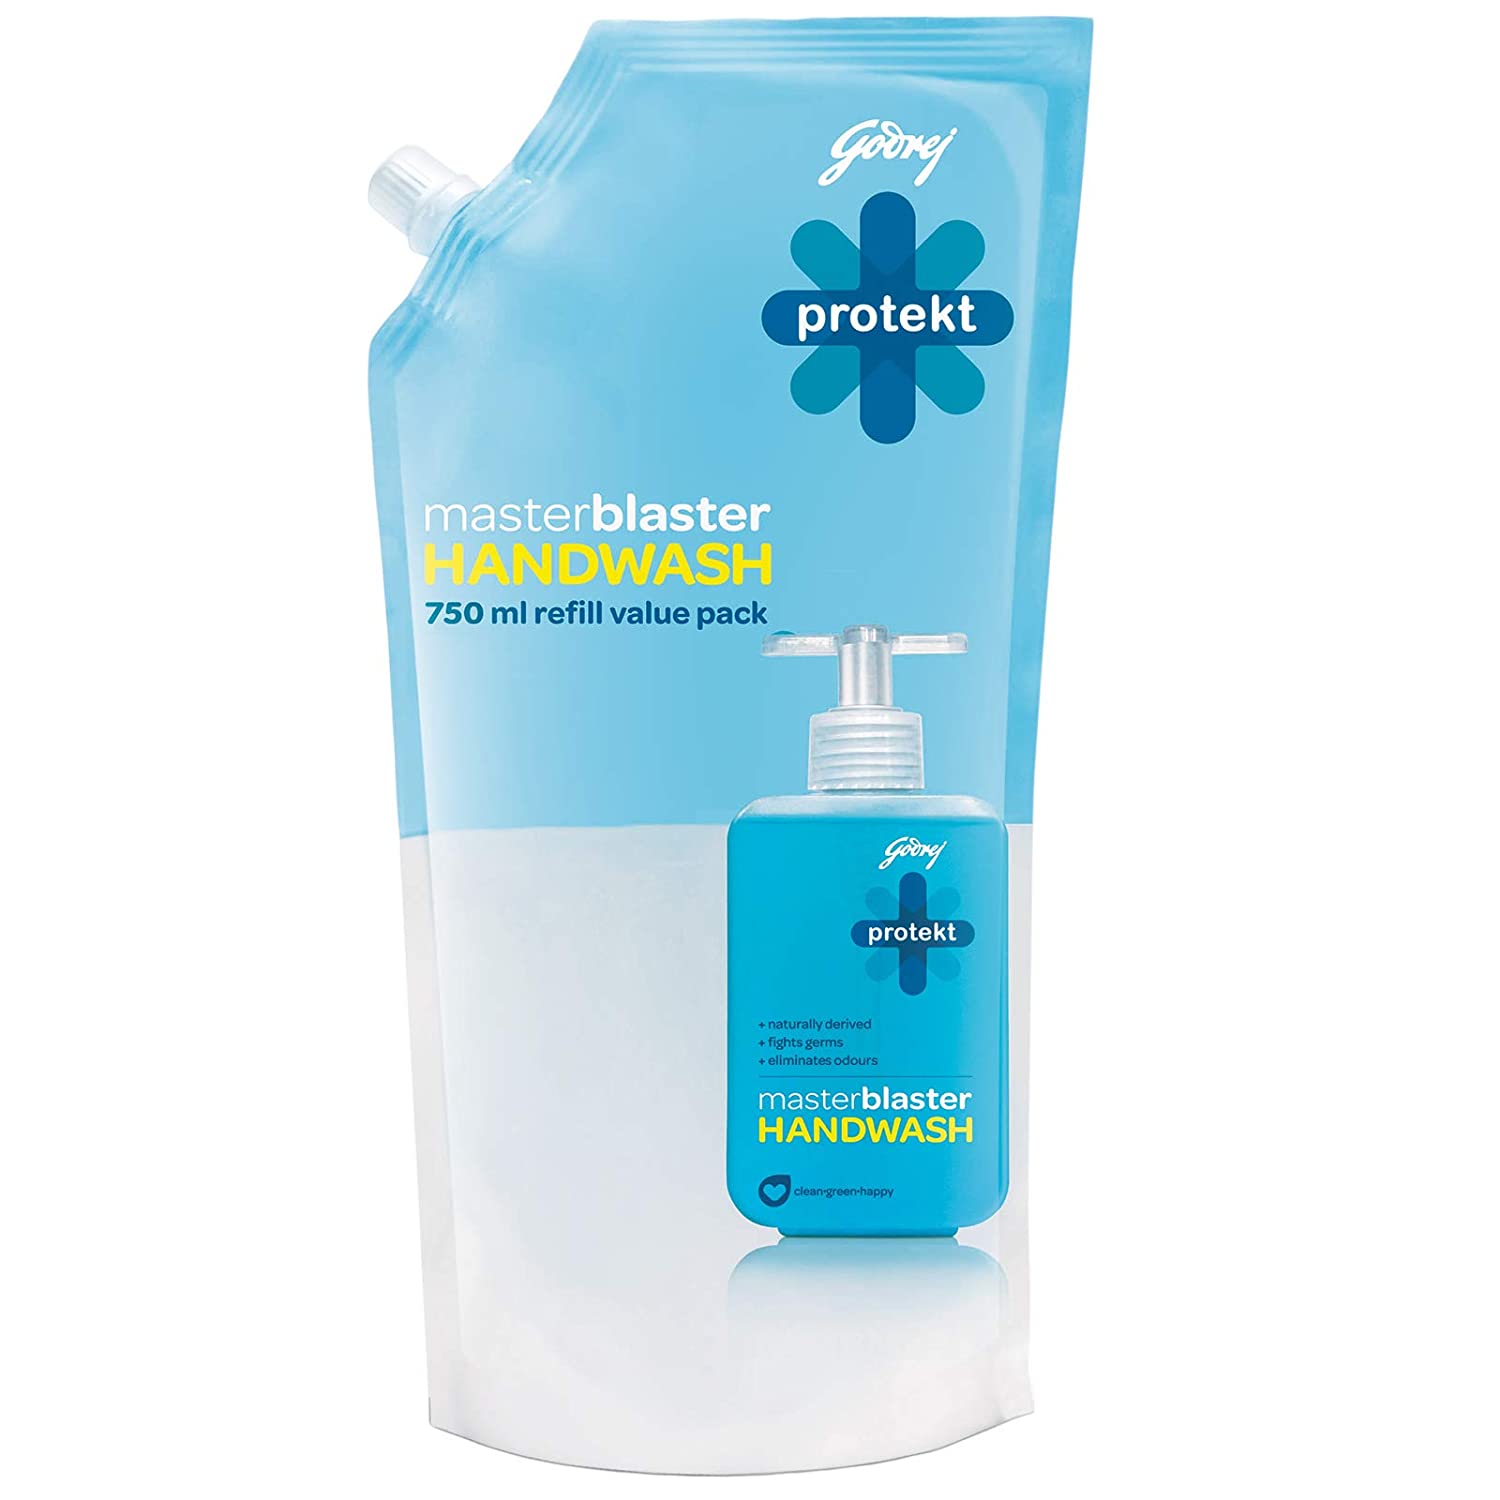 Godrej Protekt Master Blaster Handwash – 750 ml